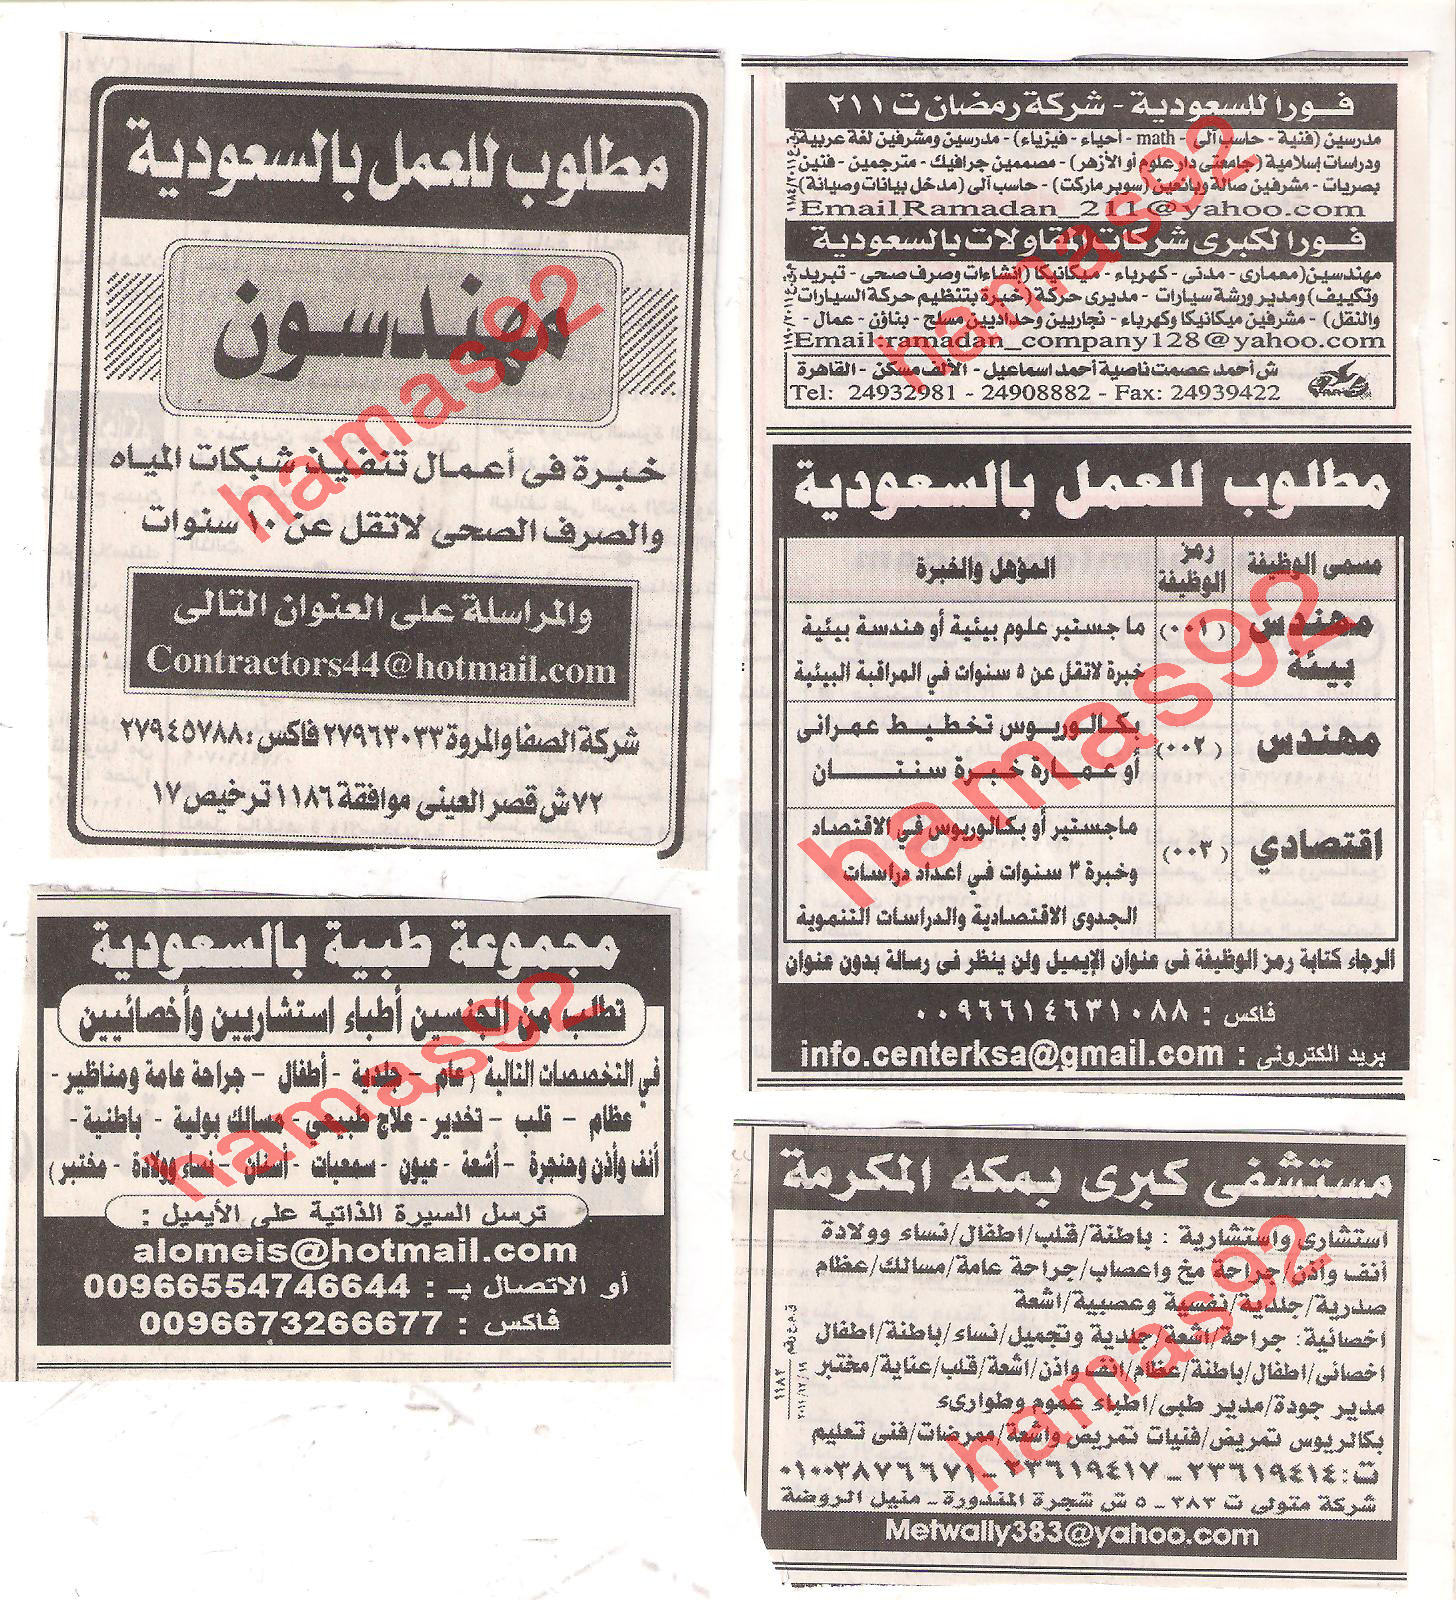 وظائف جريدة الاهرام الجمعة 23\12\2011 , الجزء الثانى , وظائف السعودية  Picture+010